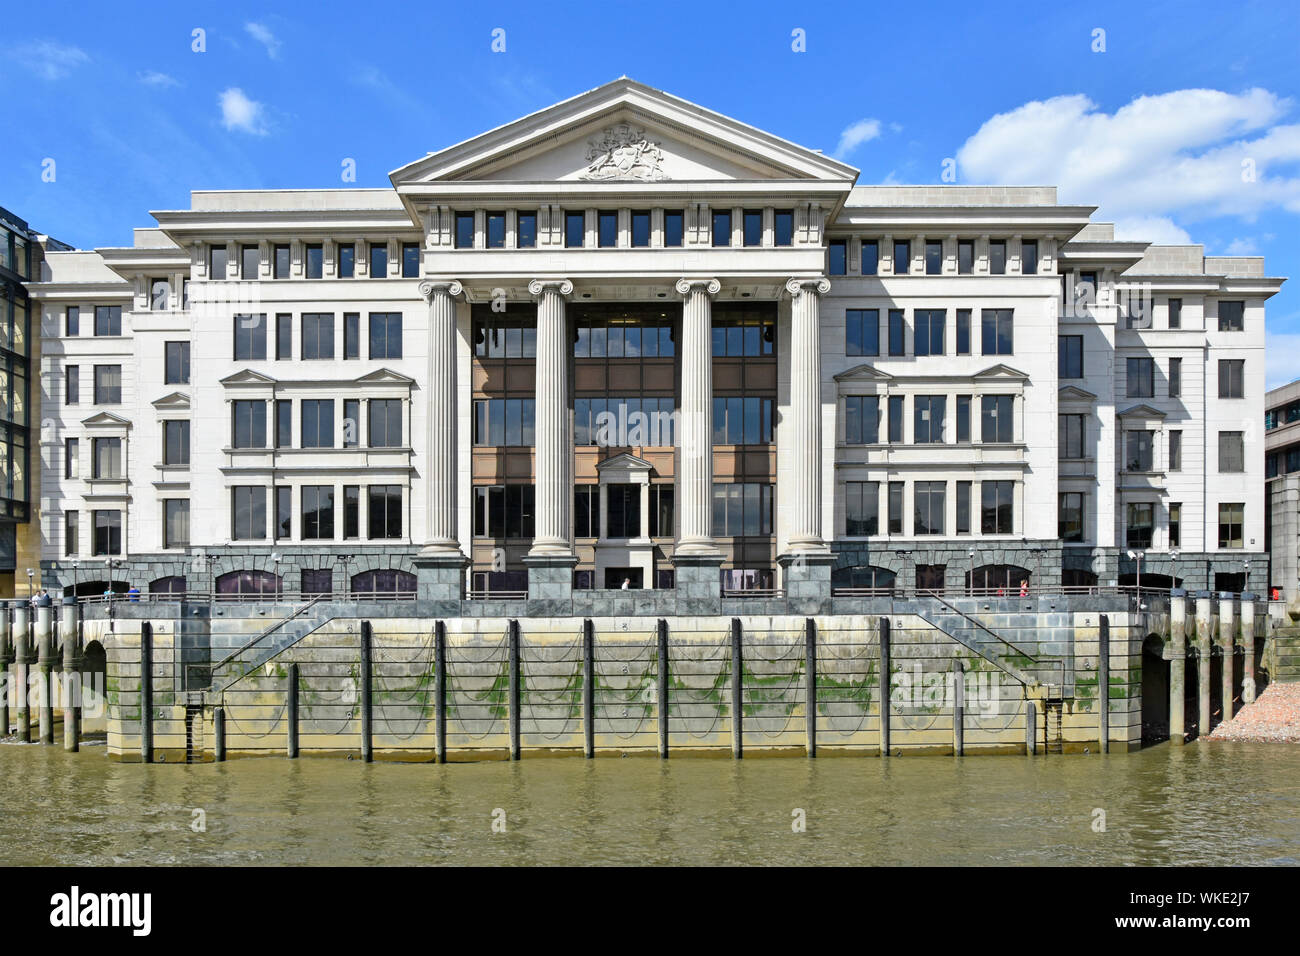 Klassische Granit und Kalkstein riverside Fassade von 1980 s Winzer Ort Bürogebäude bei Ebbe zeigt not Ketten Greifer Themse London UK Stockfoto